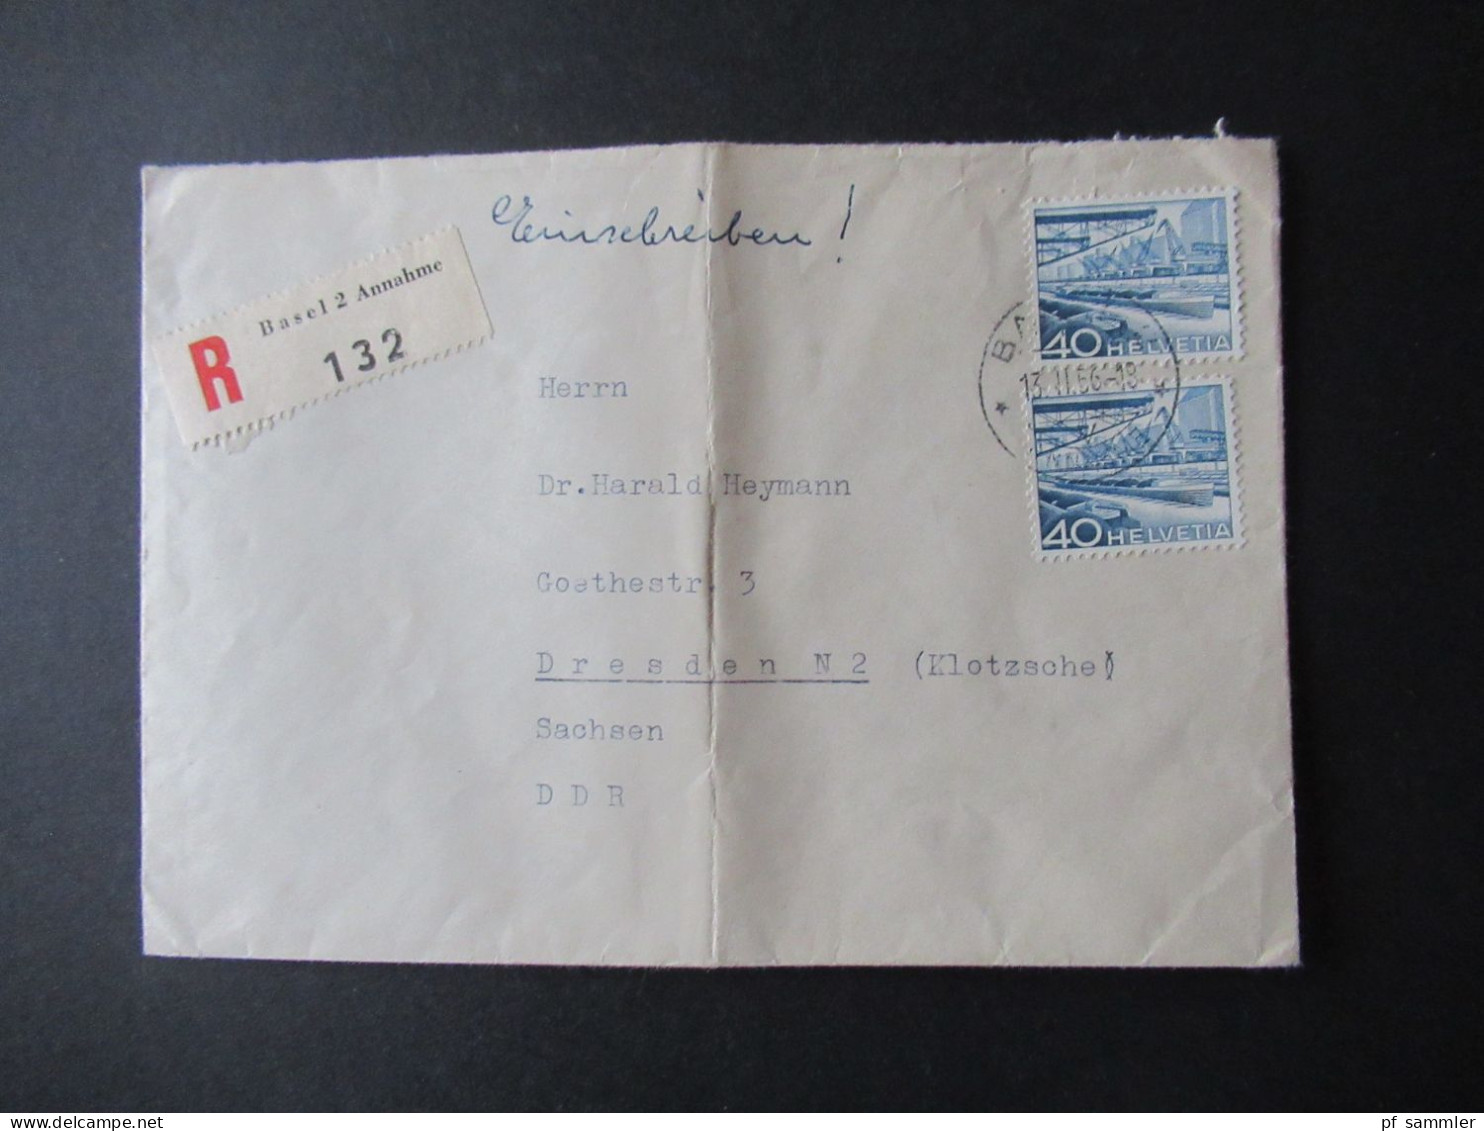 Schweiz 1956 Freimarken Landschaften Nr.537 (2) MeF Einschreiben Basel 2 Annahme Nach Dresden Klotzsche DDR - Covers & Documents